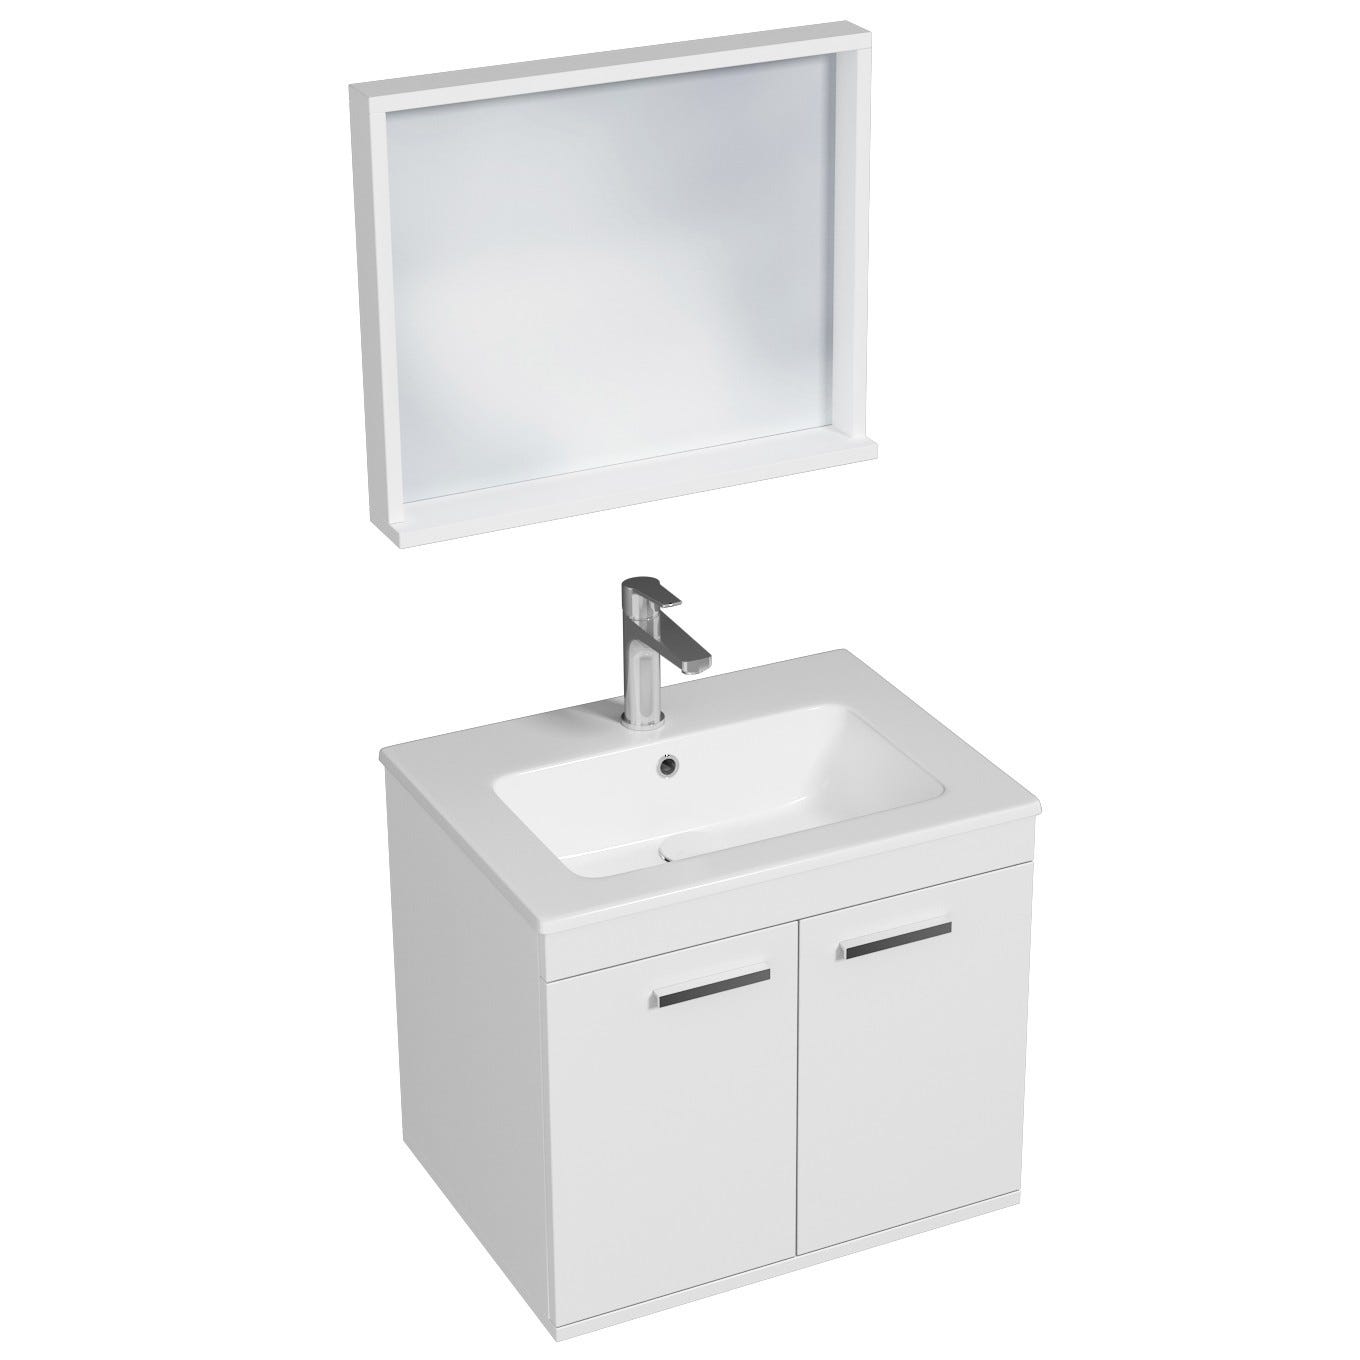 RUBITE Meuble salle de bain simple vasque 2 portes blanc largeur 60 cm + miroir cadre 0